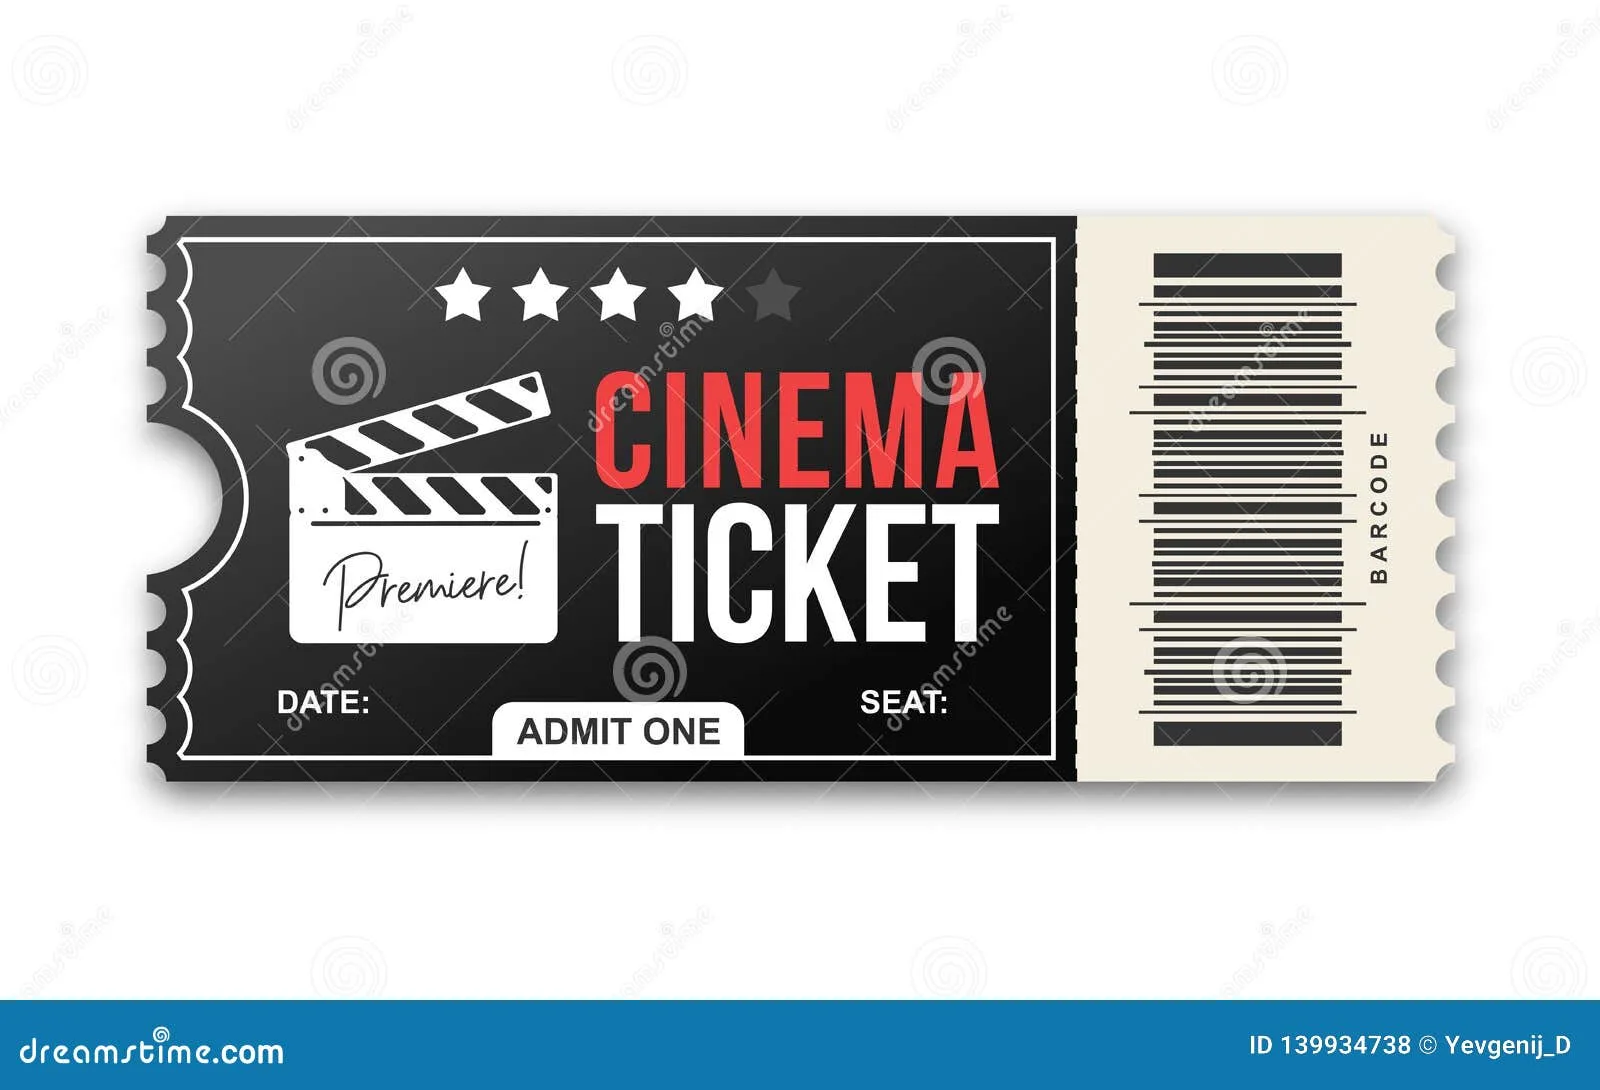 Performance ticket. Пригласительный билет в кинотеатр шаблон. Билет в кинотеатр картинка.